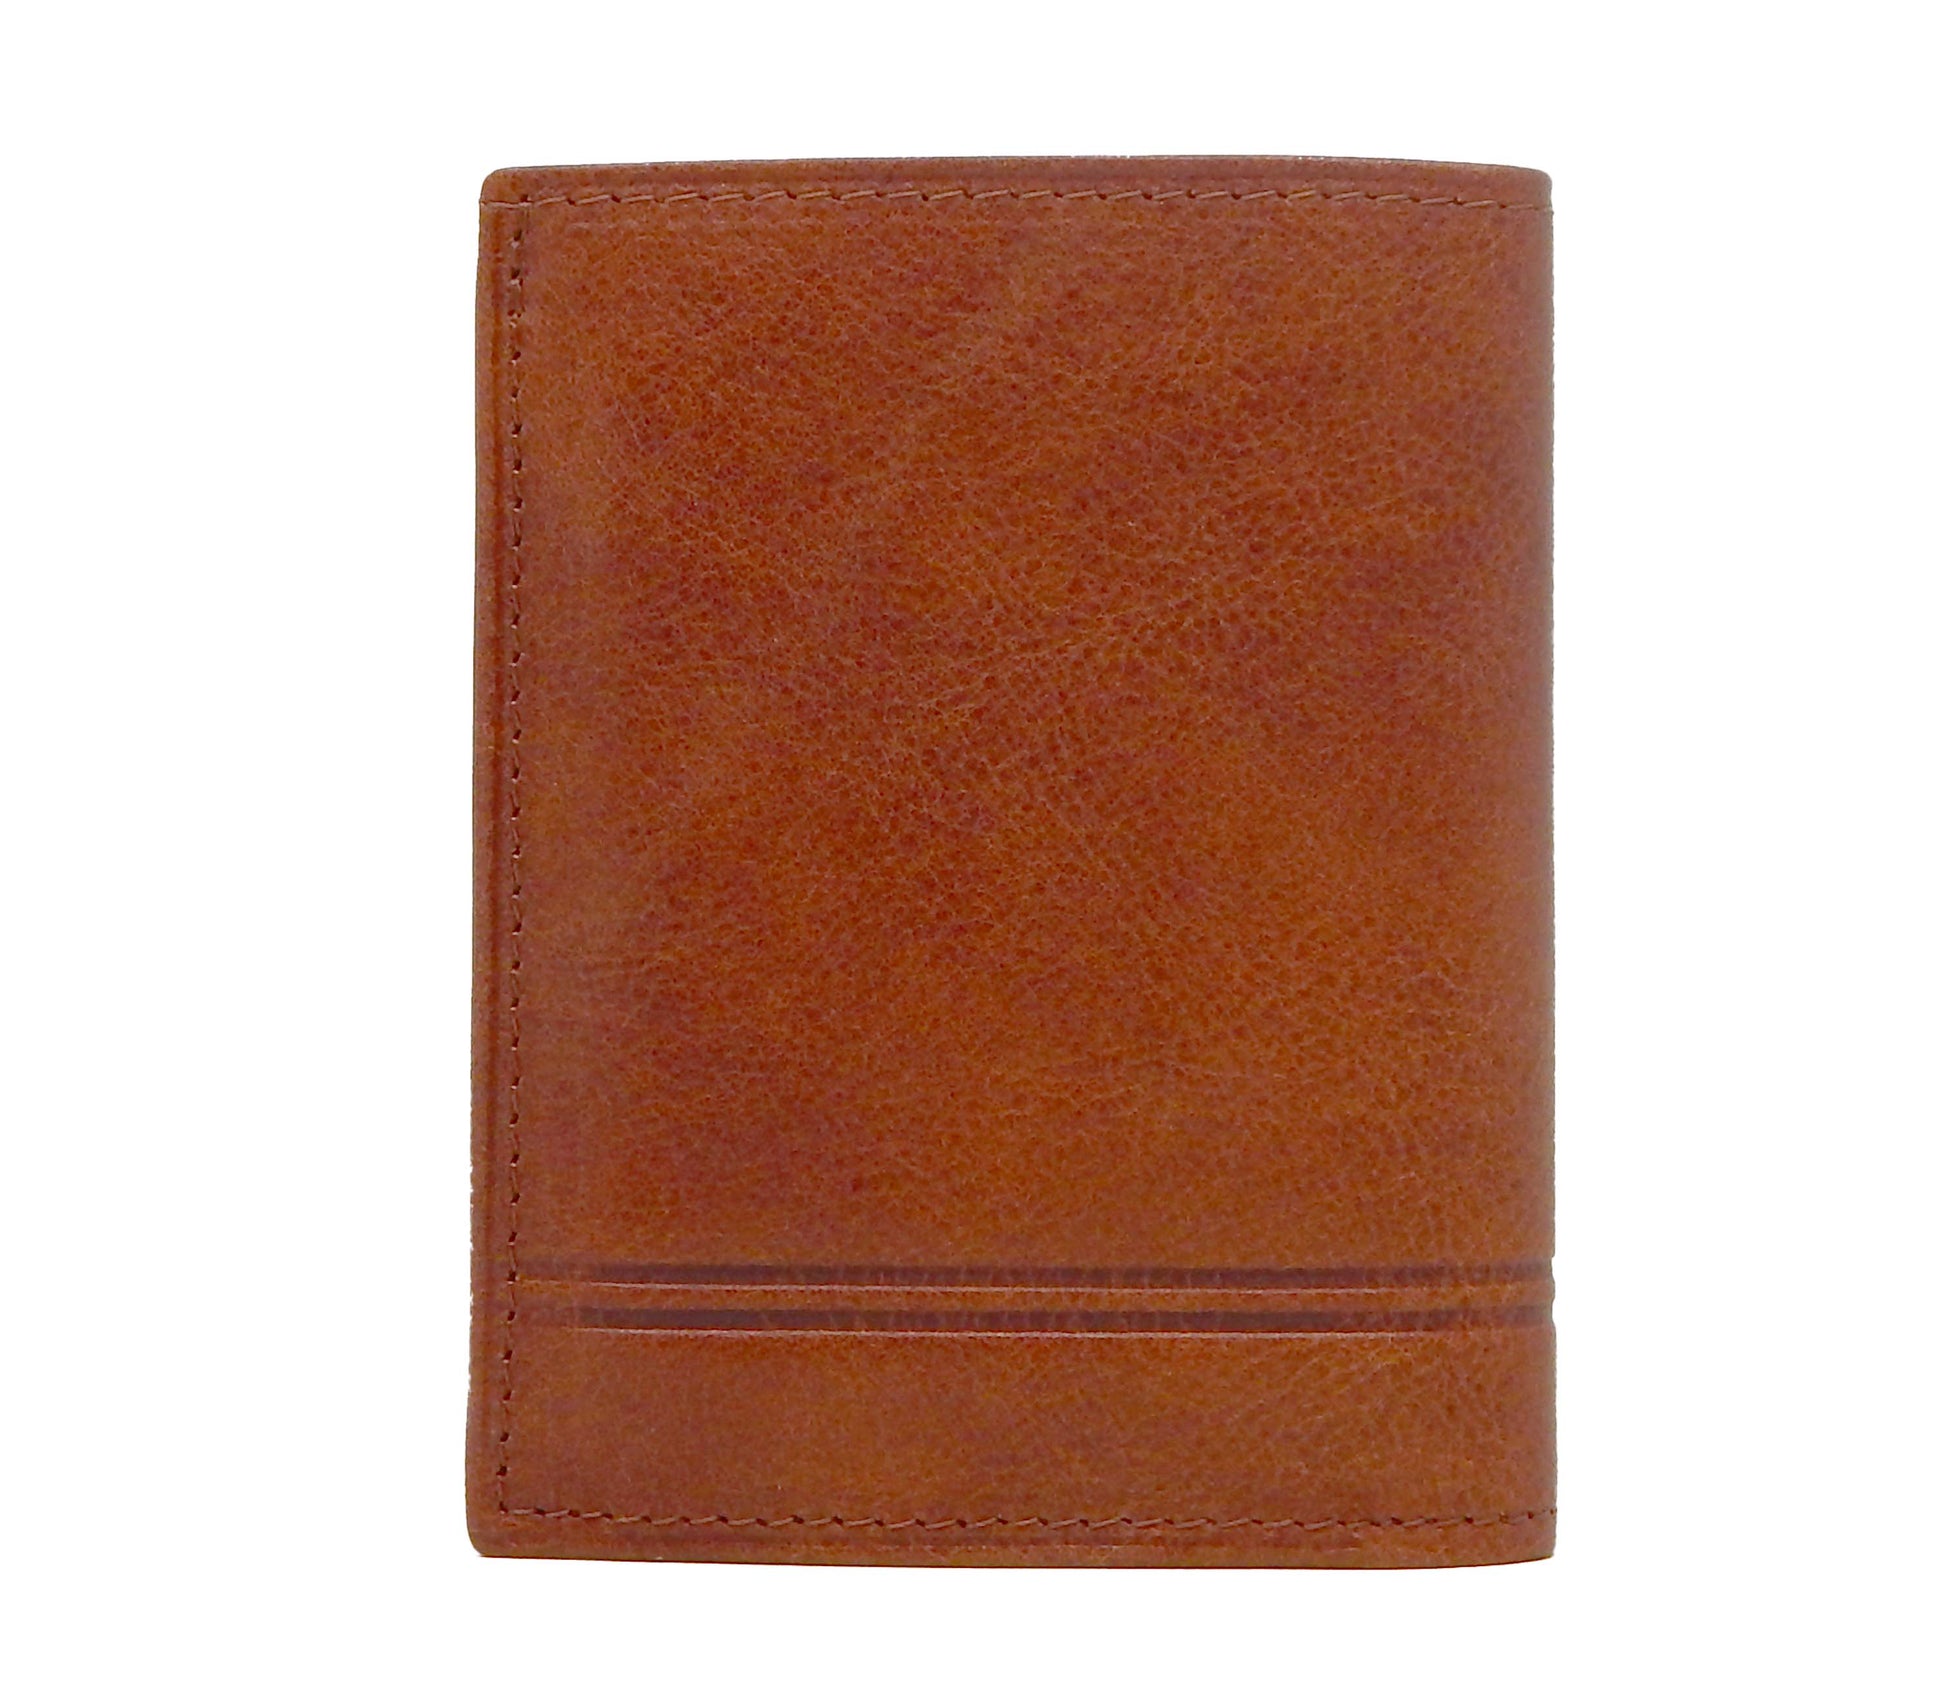 Cavalinho Men's Trifold Leather Wallet - SaddleBrown - 28160522.13.99_3